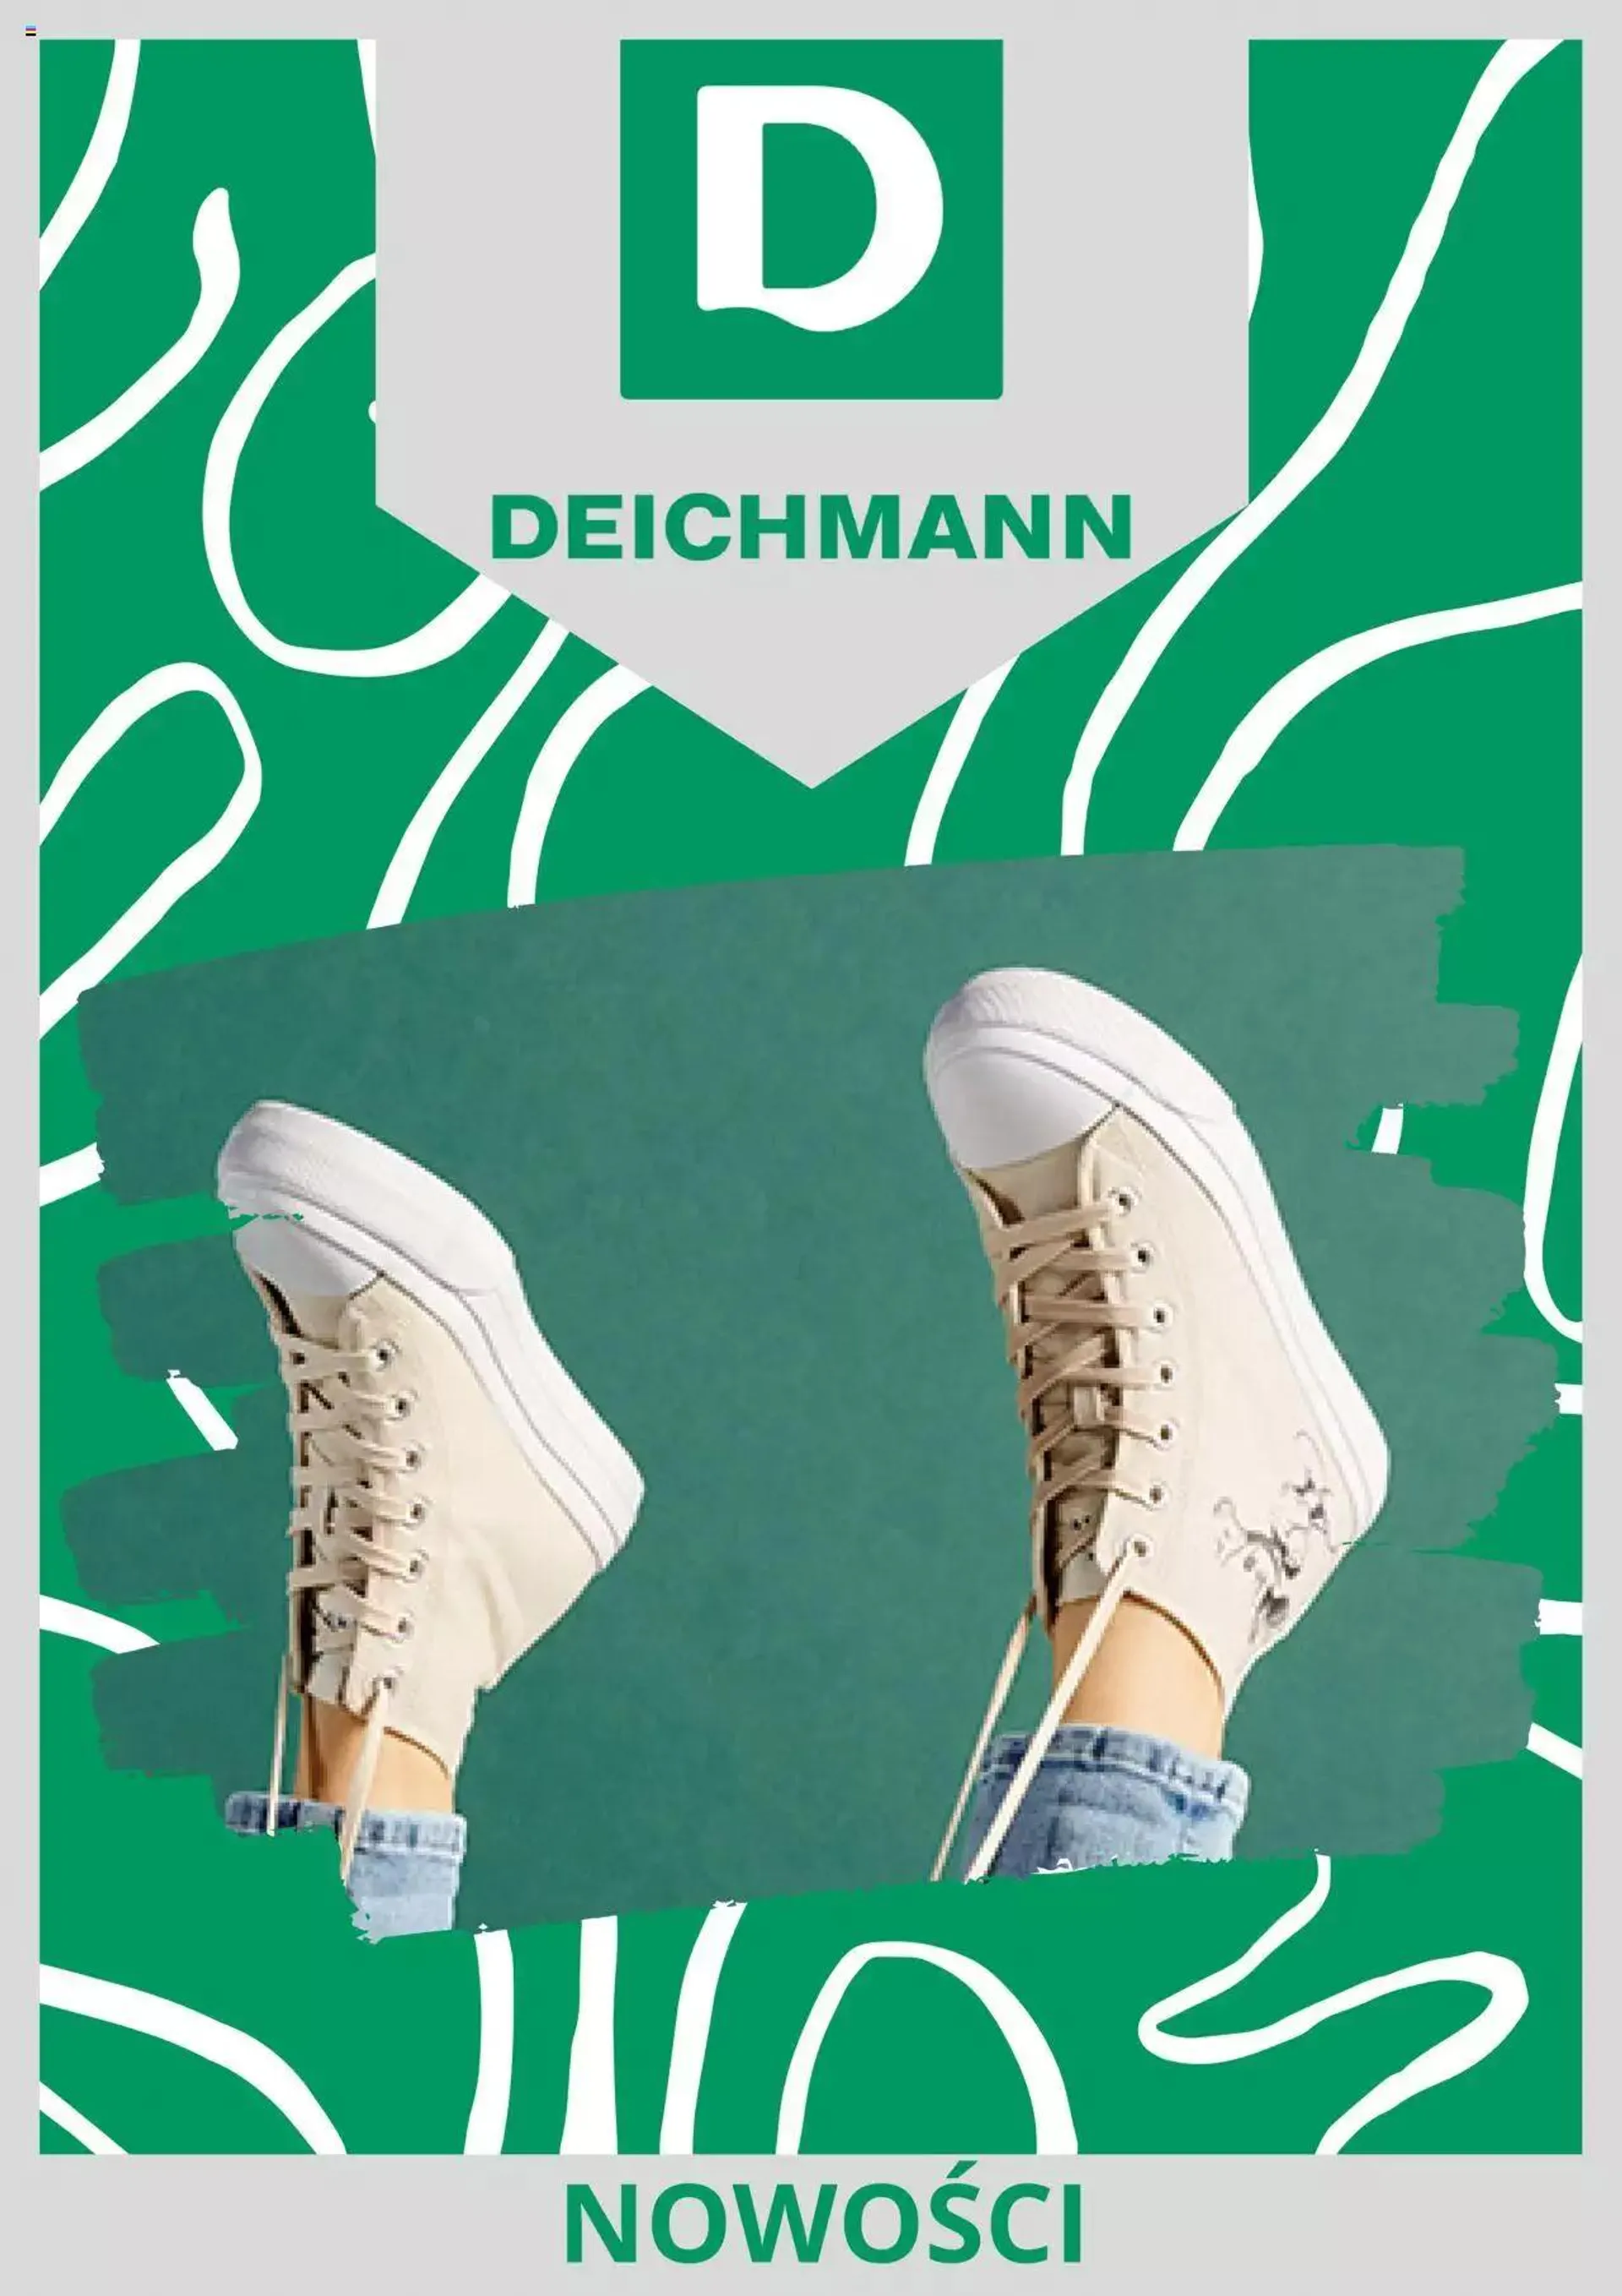 Deichmann - Promocja